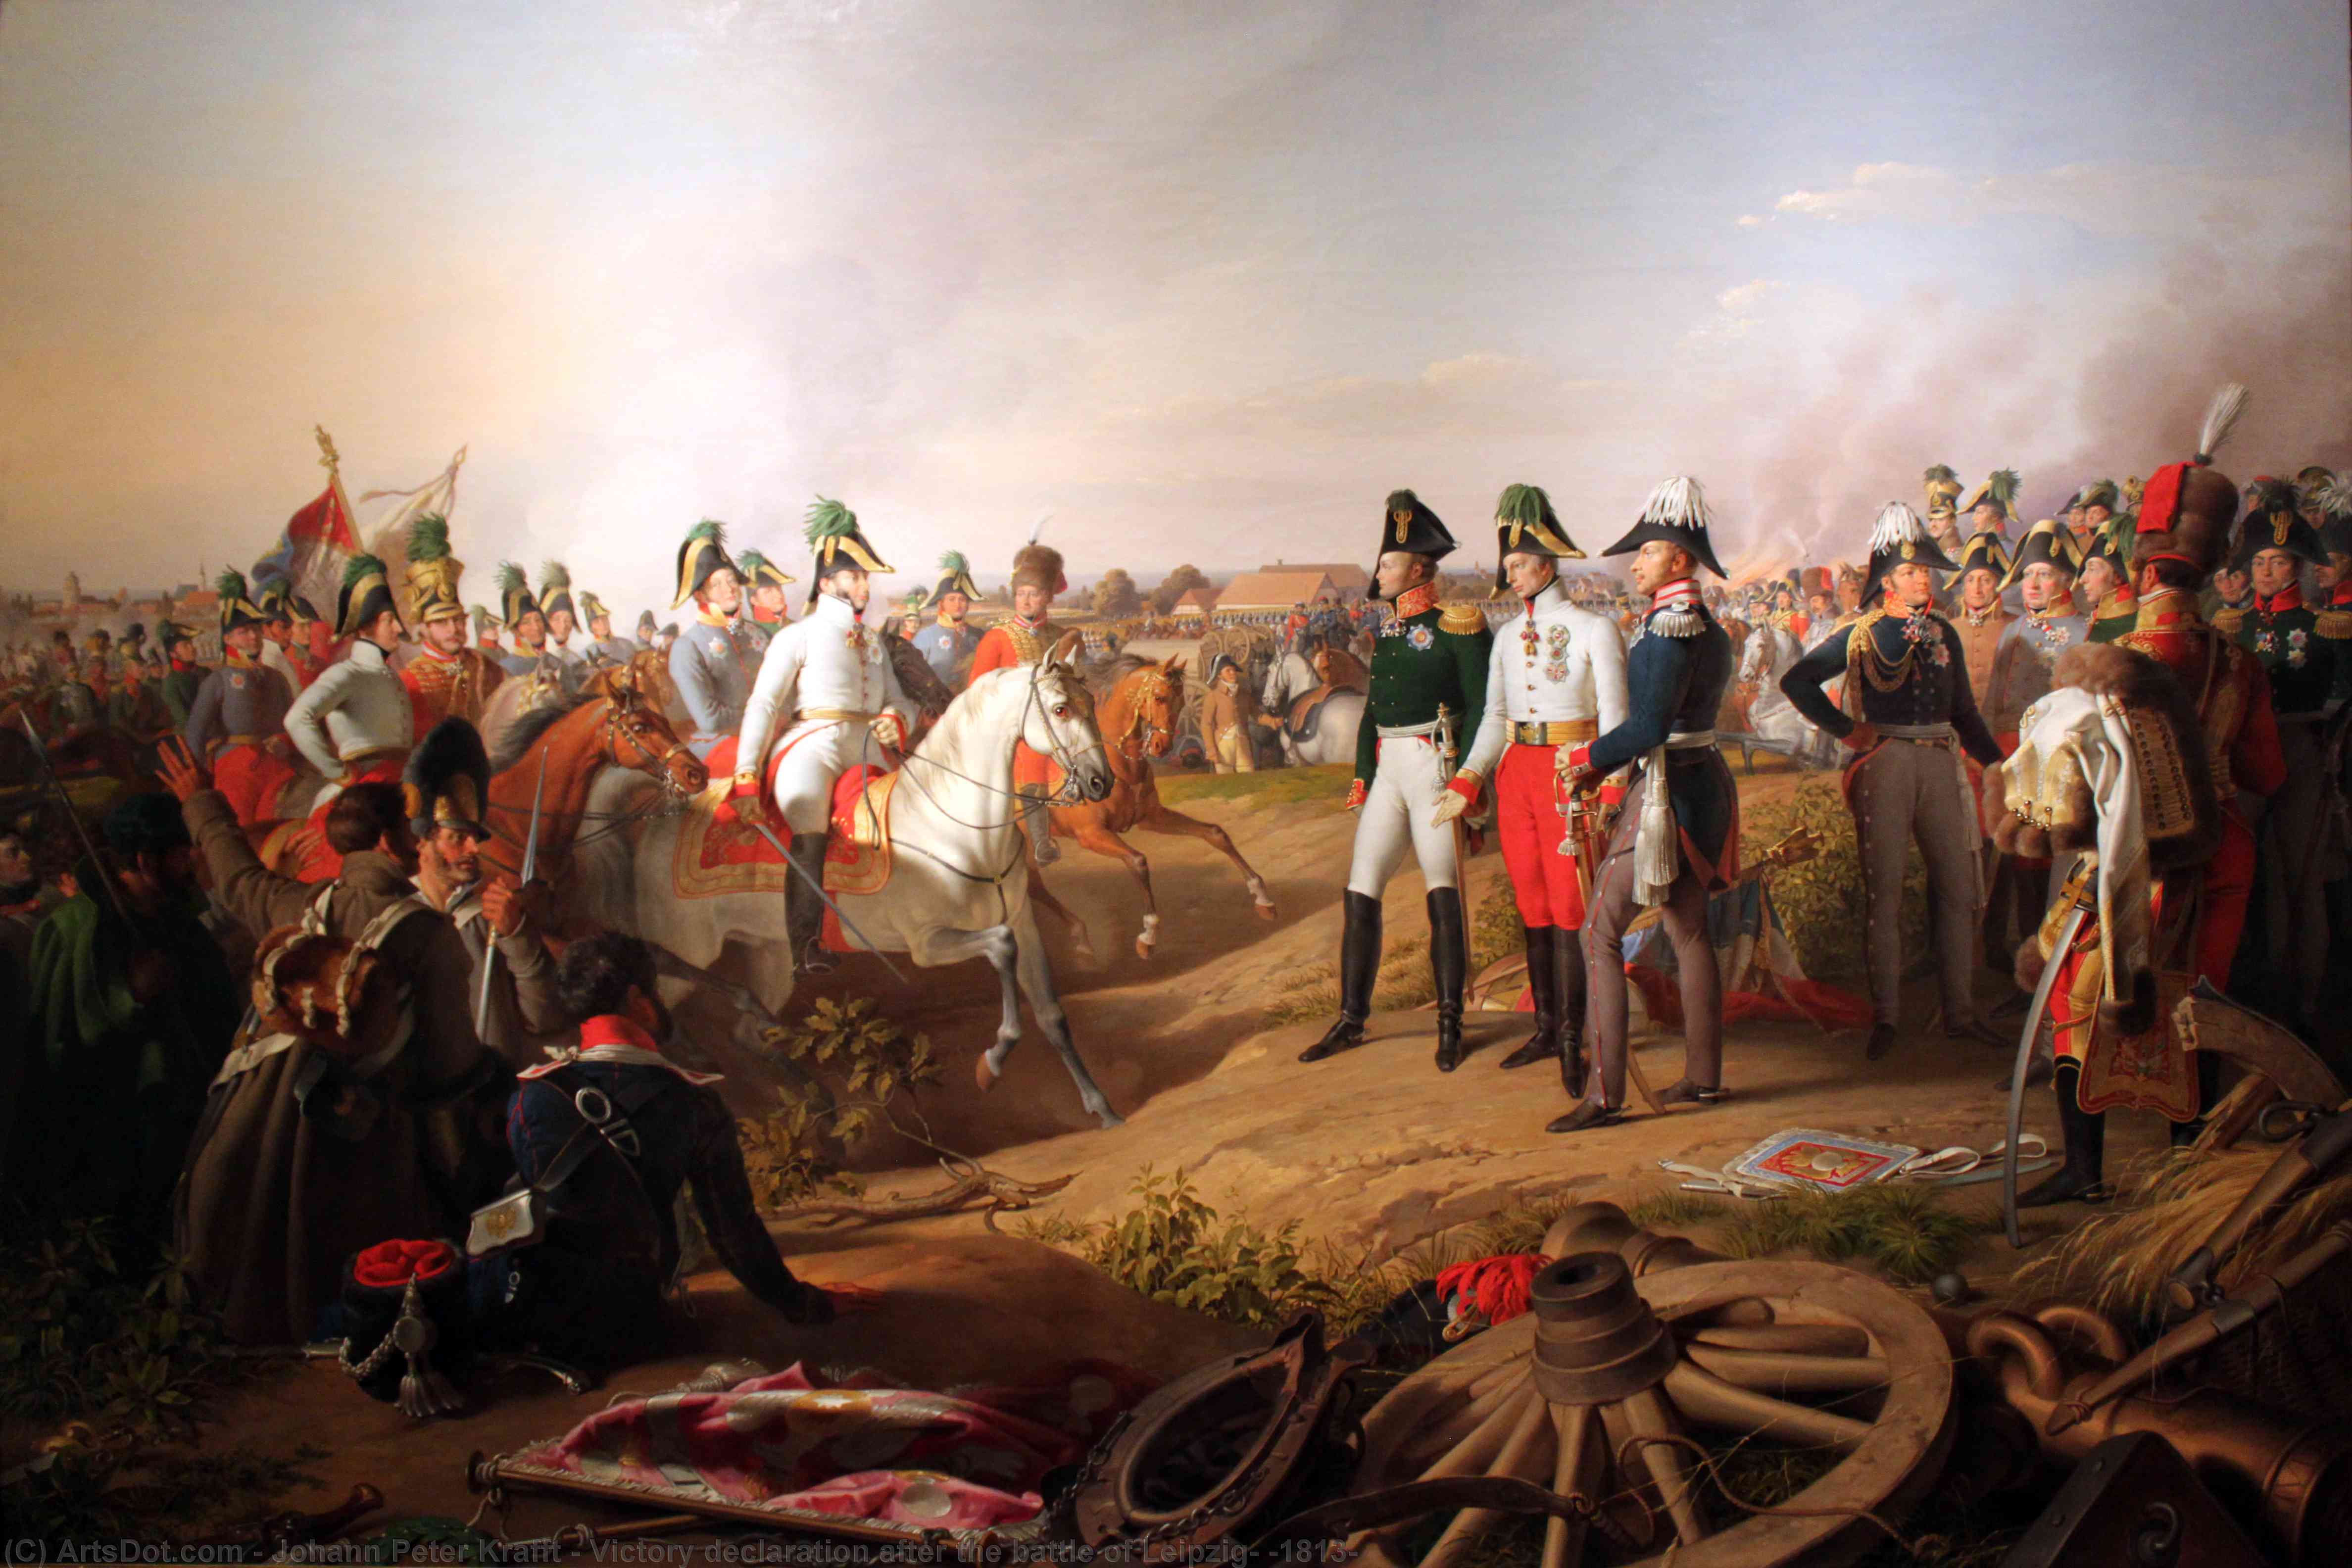 WikiOO.org - Εγκυκλοπαίδεια Καλών Τεχνών - Ζωγραφική, έργα τέχνης Johann Peter Krafft - Victory declaration after the battle of Leipzig, (1813)